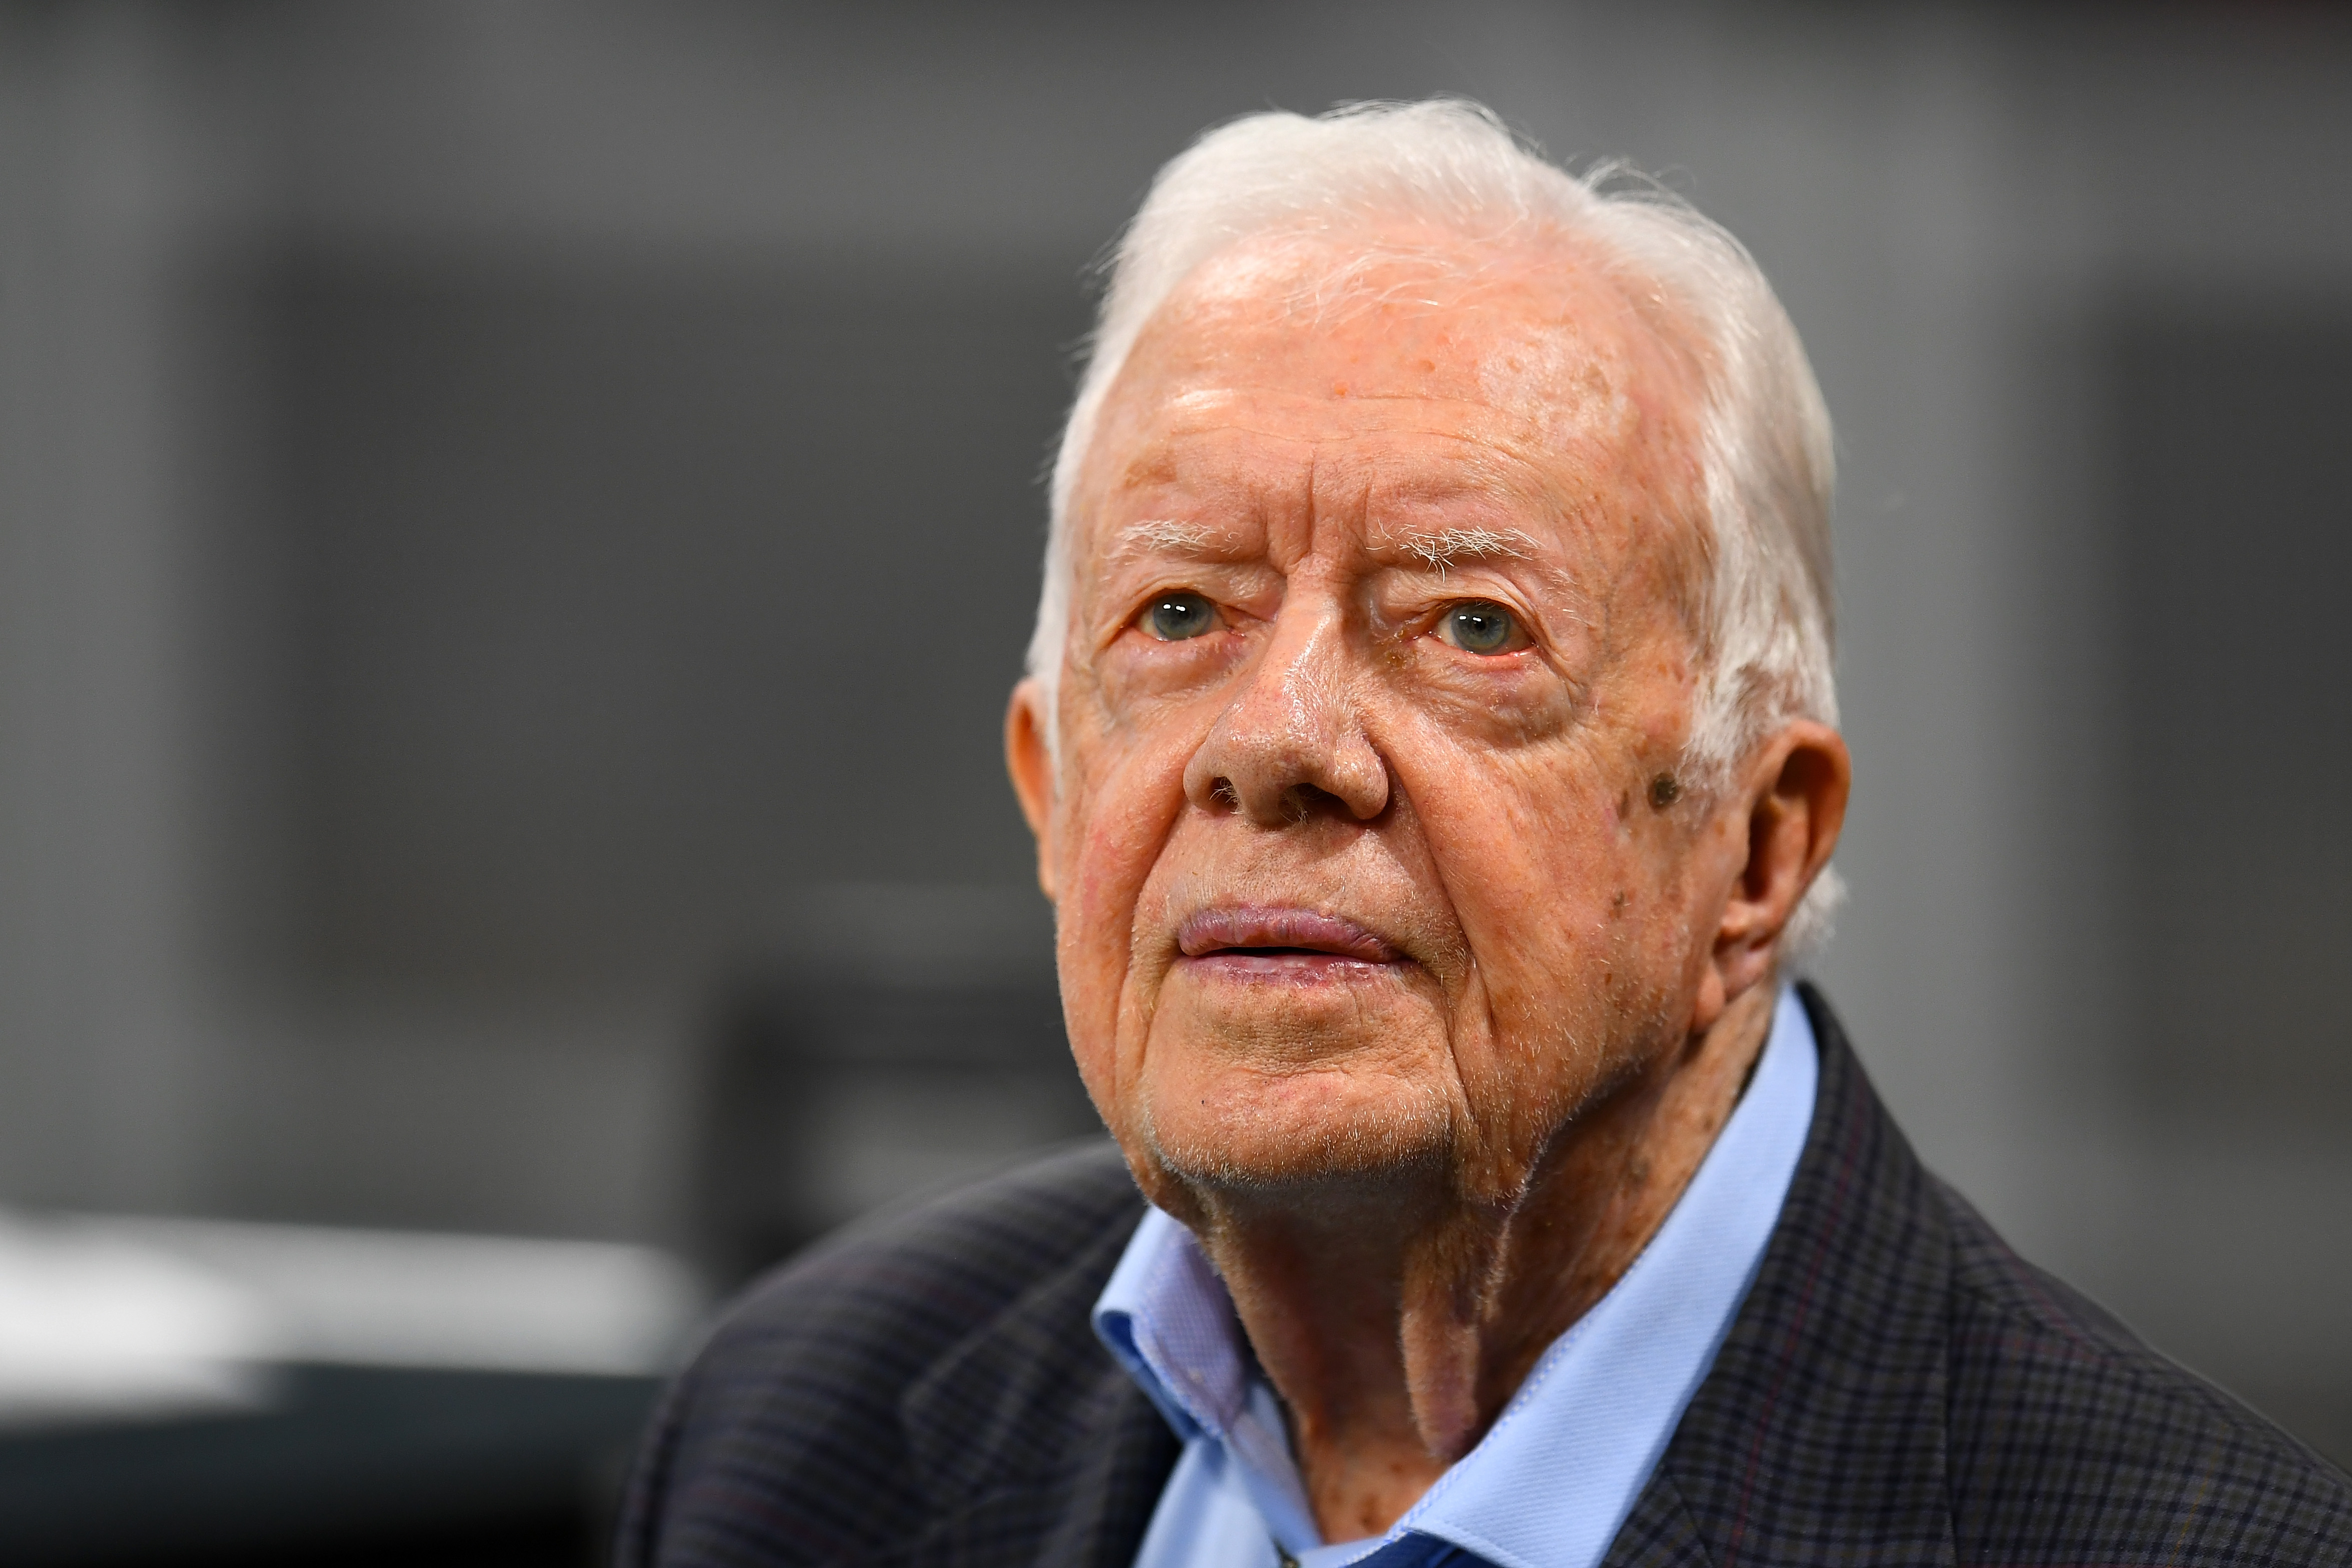 Former President Jimmy Carter.